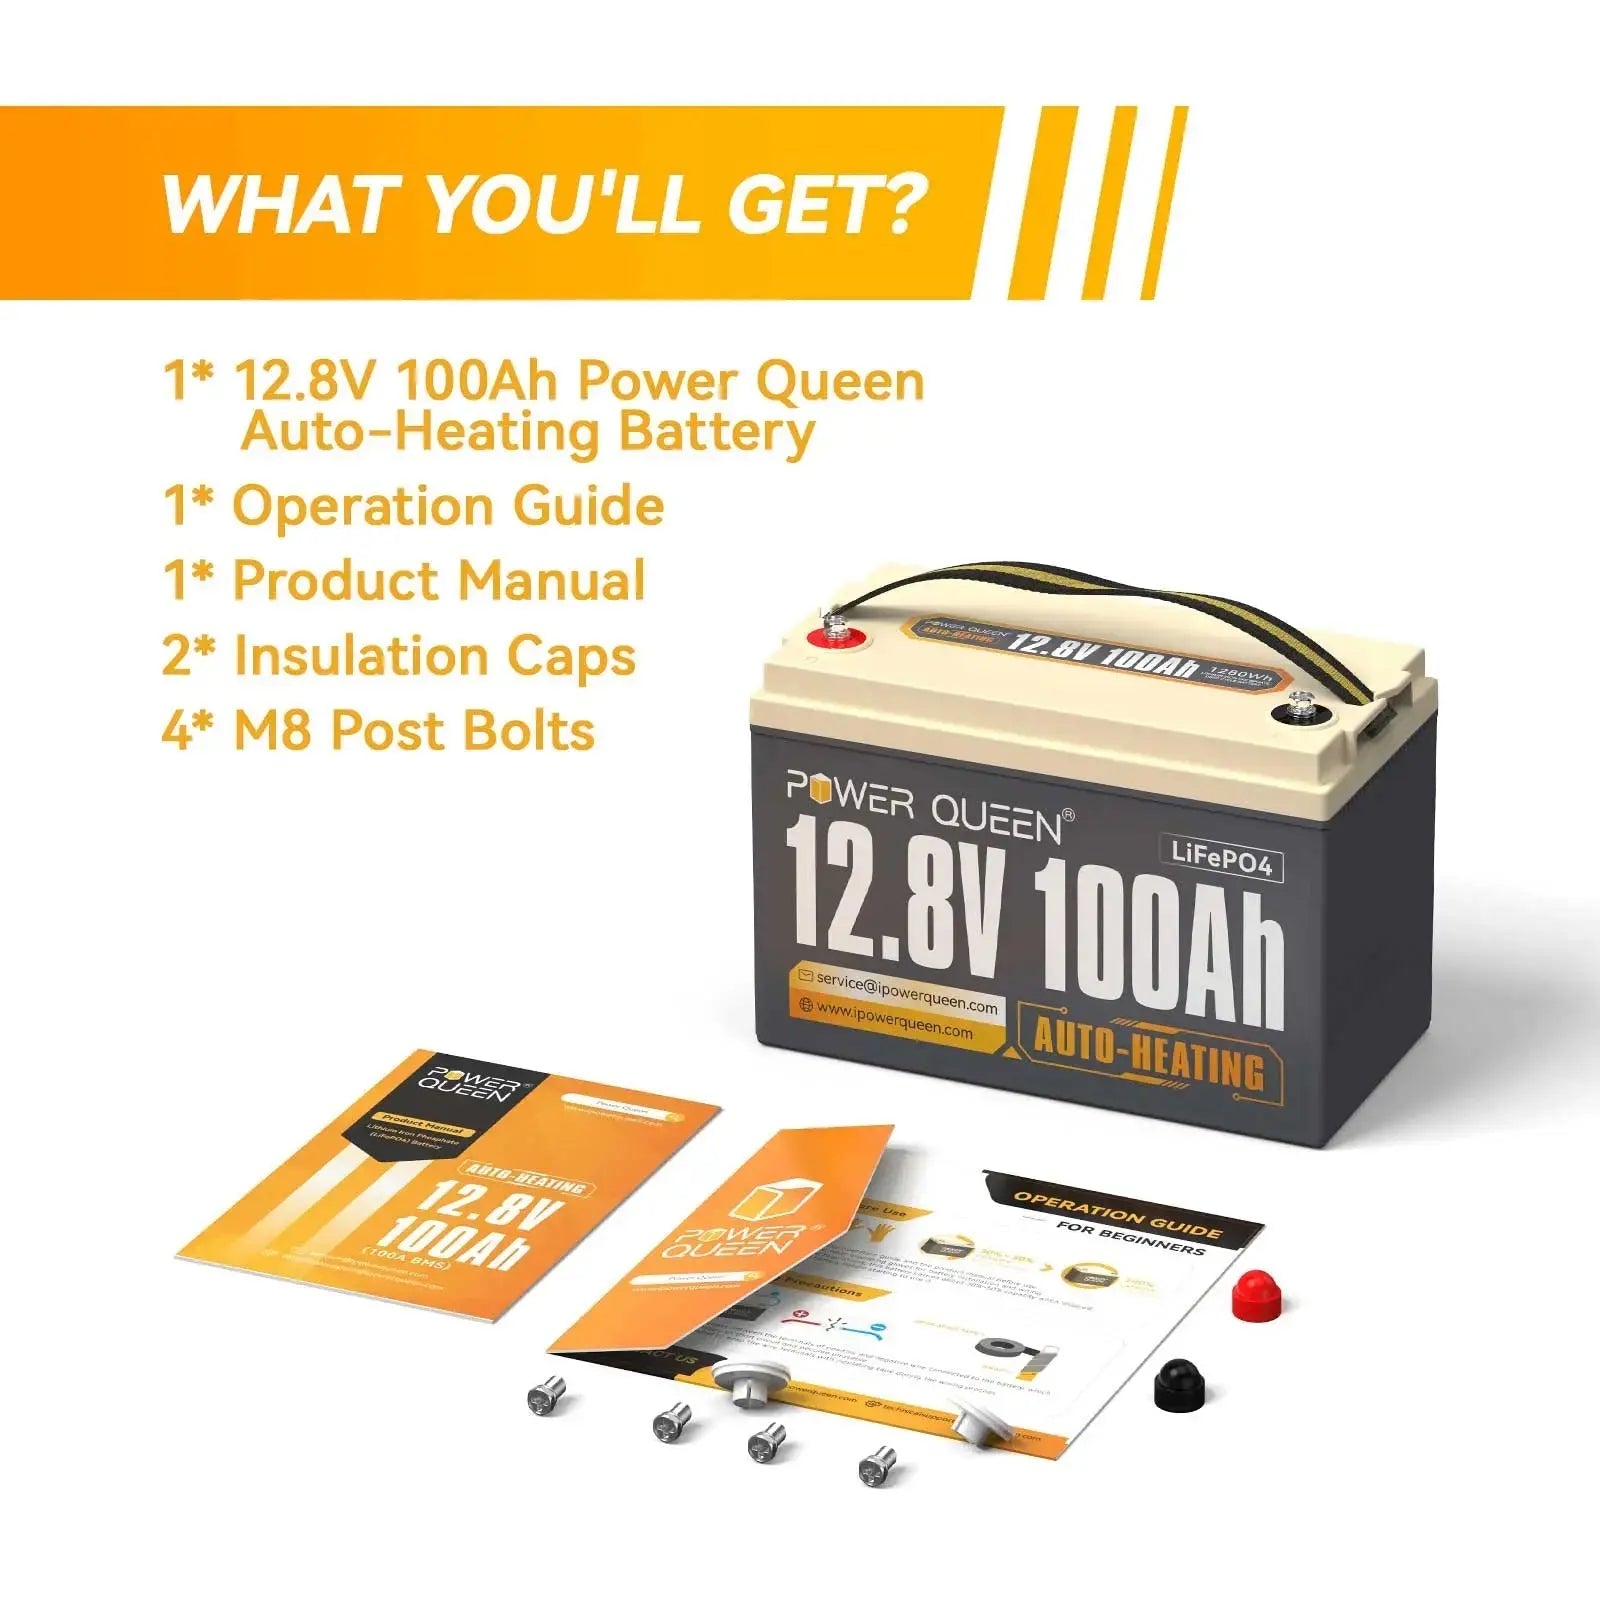 Power Queen 12.8V 100Ah Self-Heating Lithium Battery, Built-in 100A BMS Power Queen